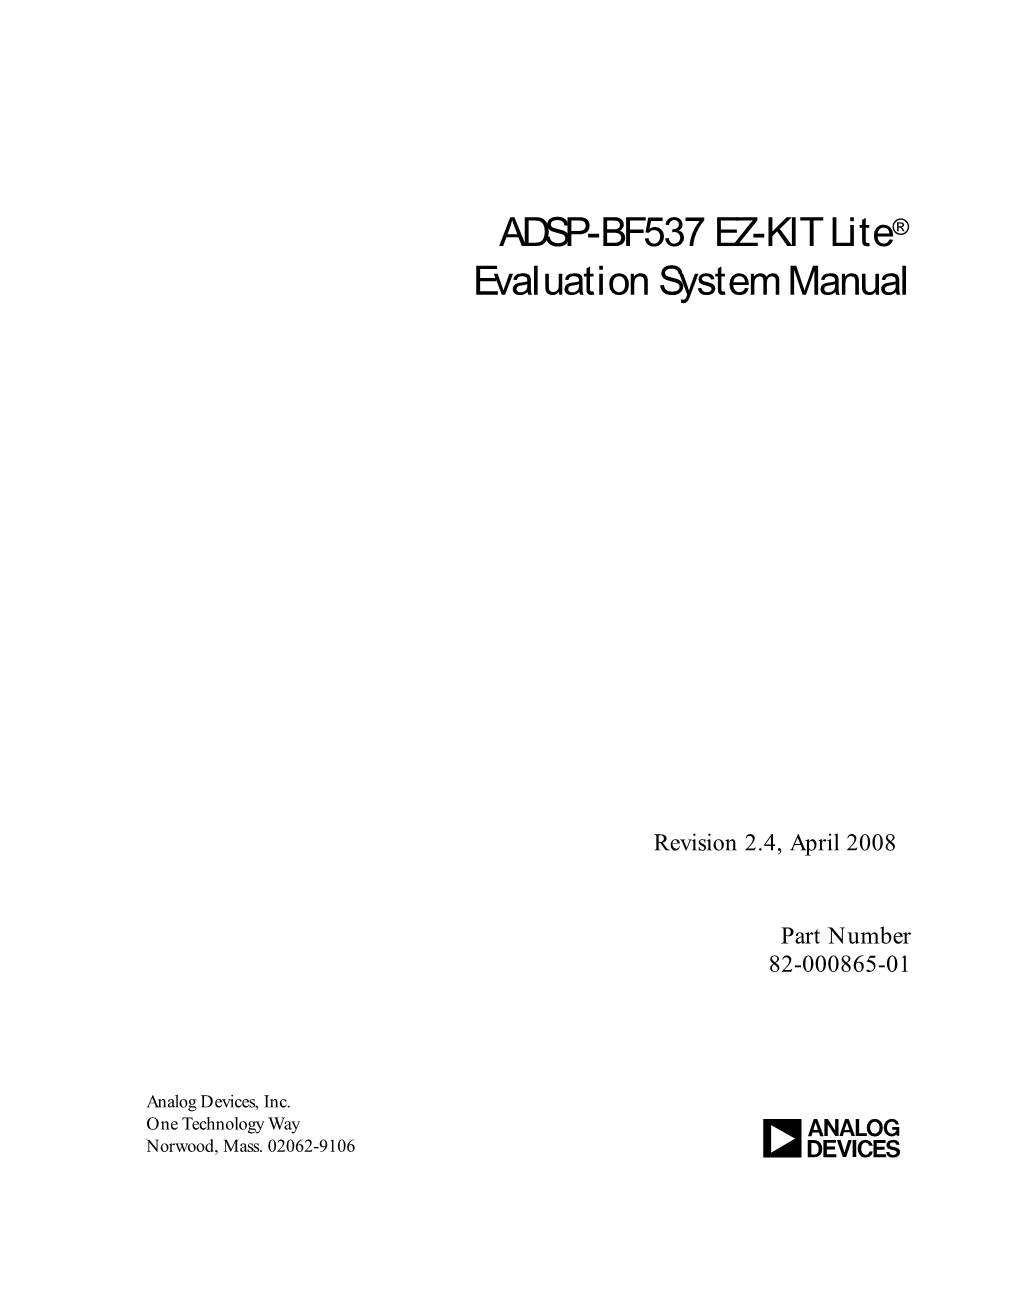 ADSP-BF537 EZ-KIT Lite® Evaluation System Manual